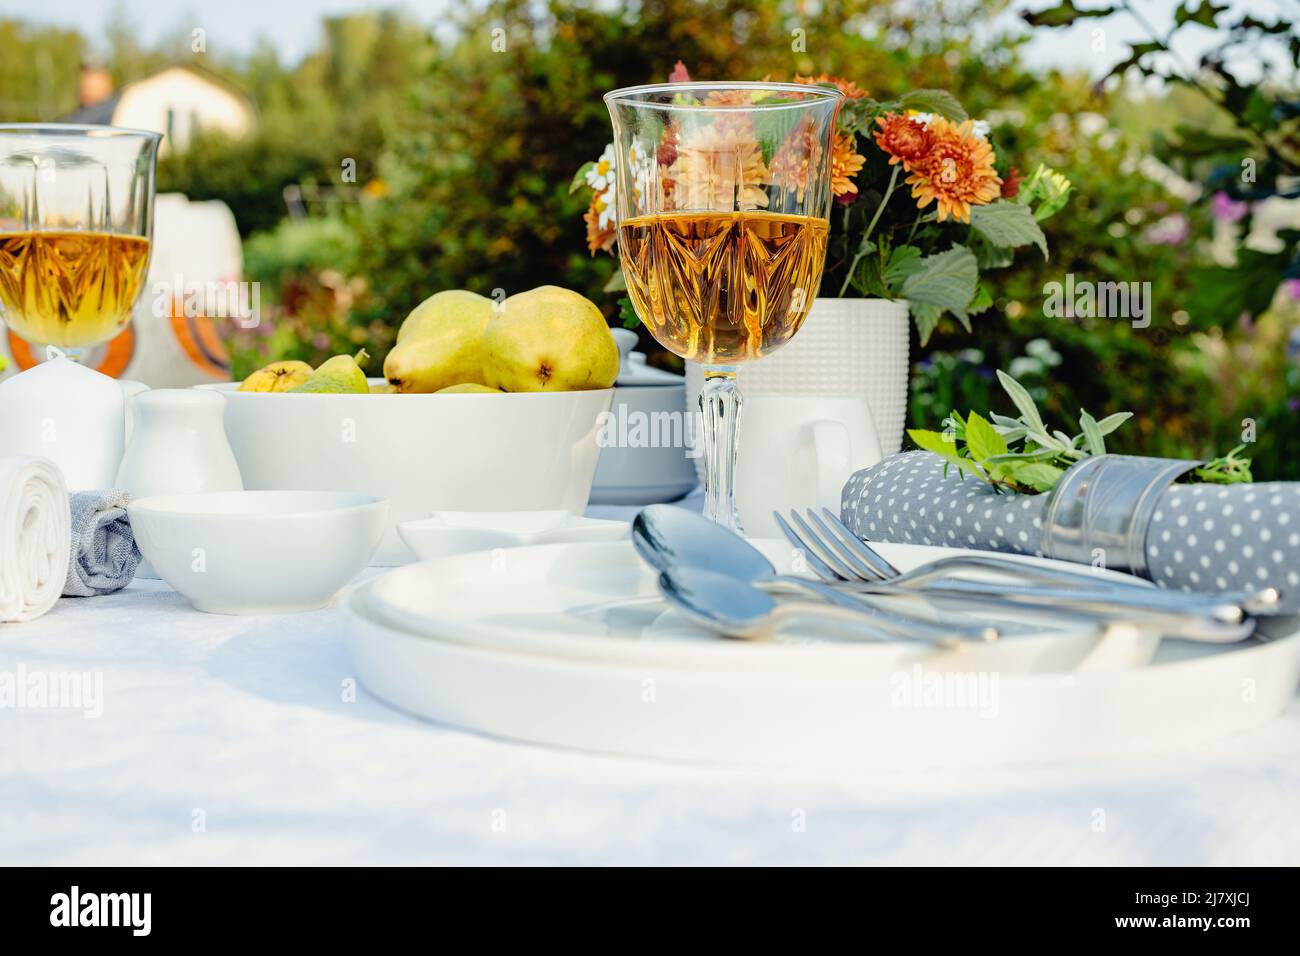 Mise en place de la table des fêtes d'été. Table élégante avec vaisselle blanche sur nappe blanche. Fruits mûrs, boissons dans des verres en cristal. Jeu de tables pour Banque D'Images